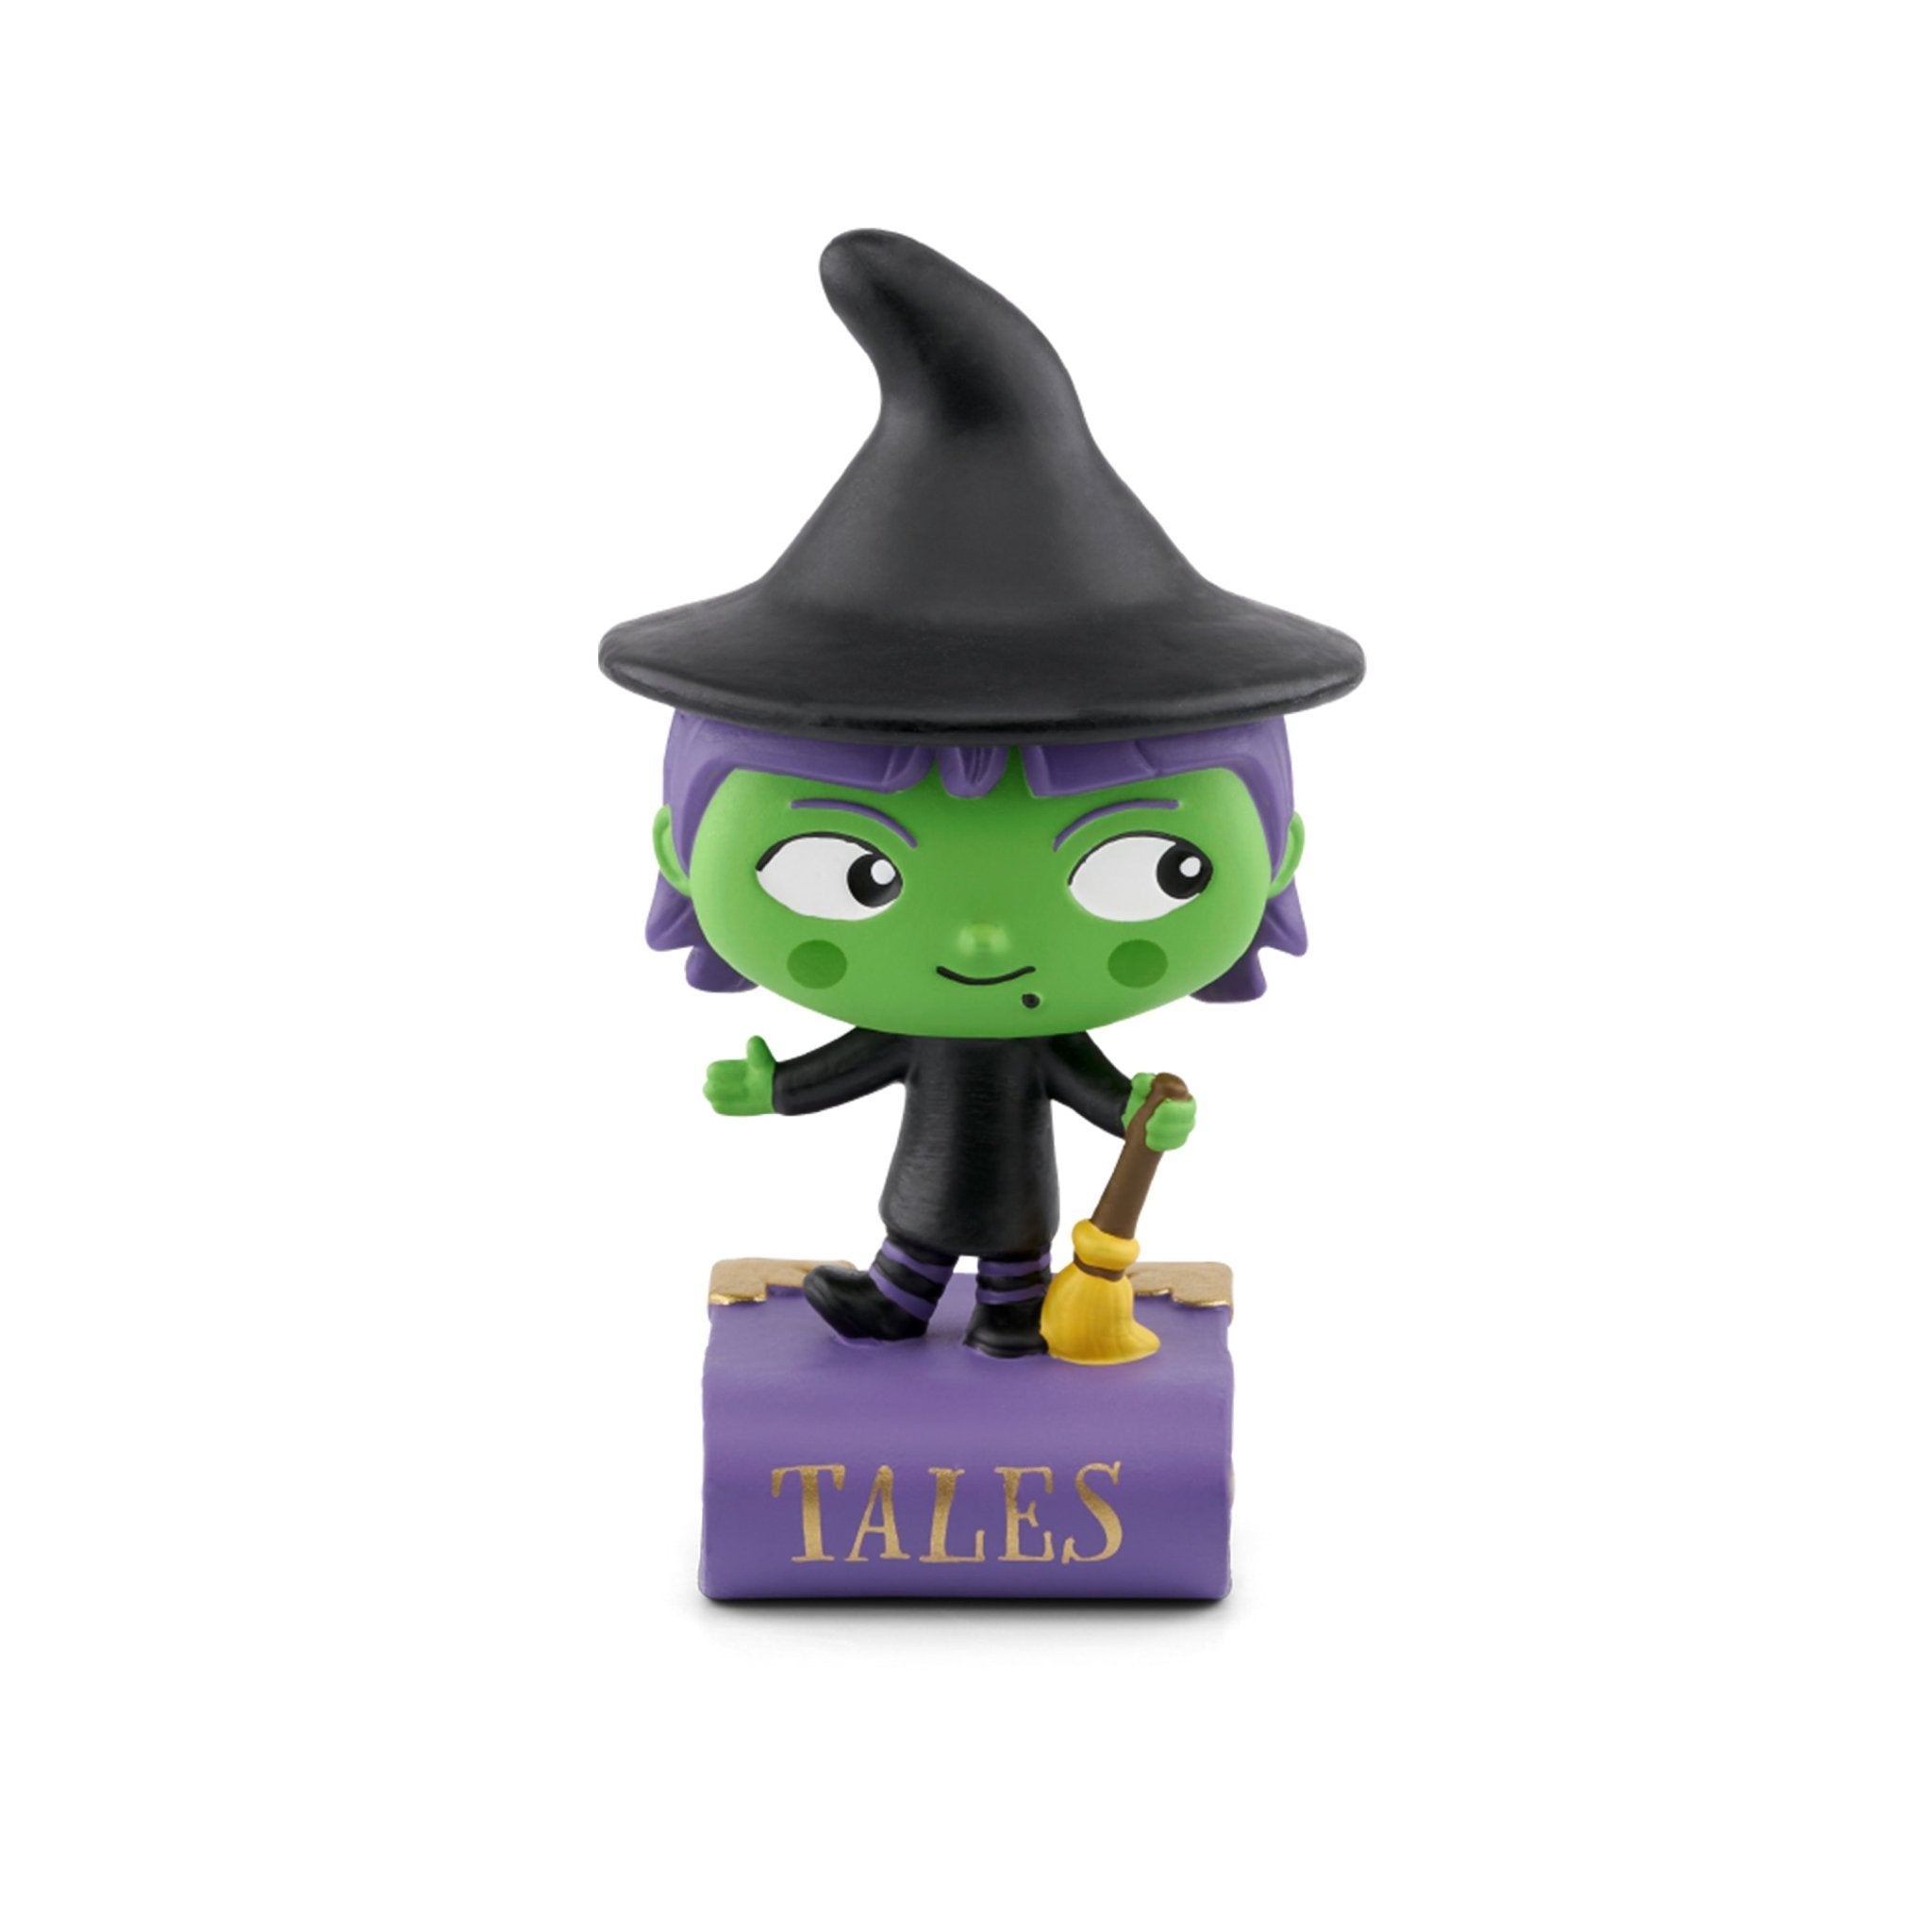 Tonies Favorite Spooky Tales Audio Play Figurine, -- ANB Baby